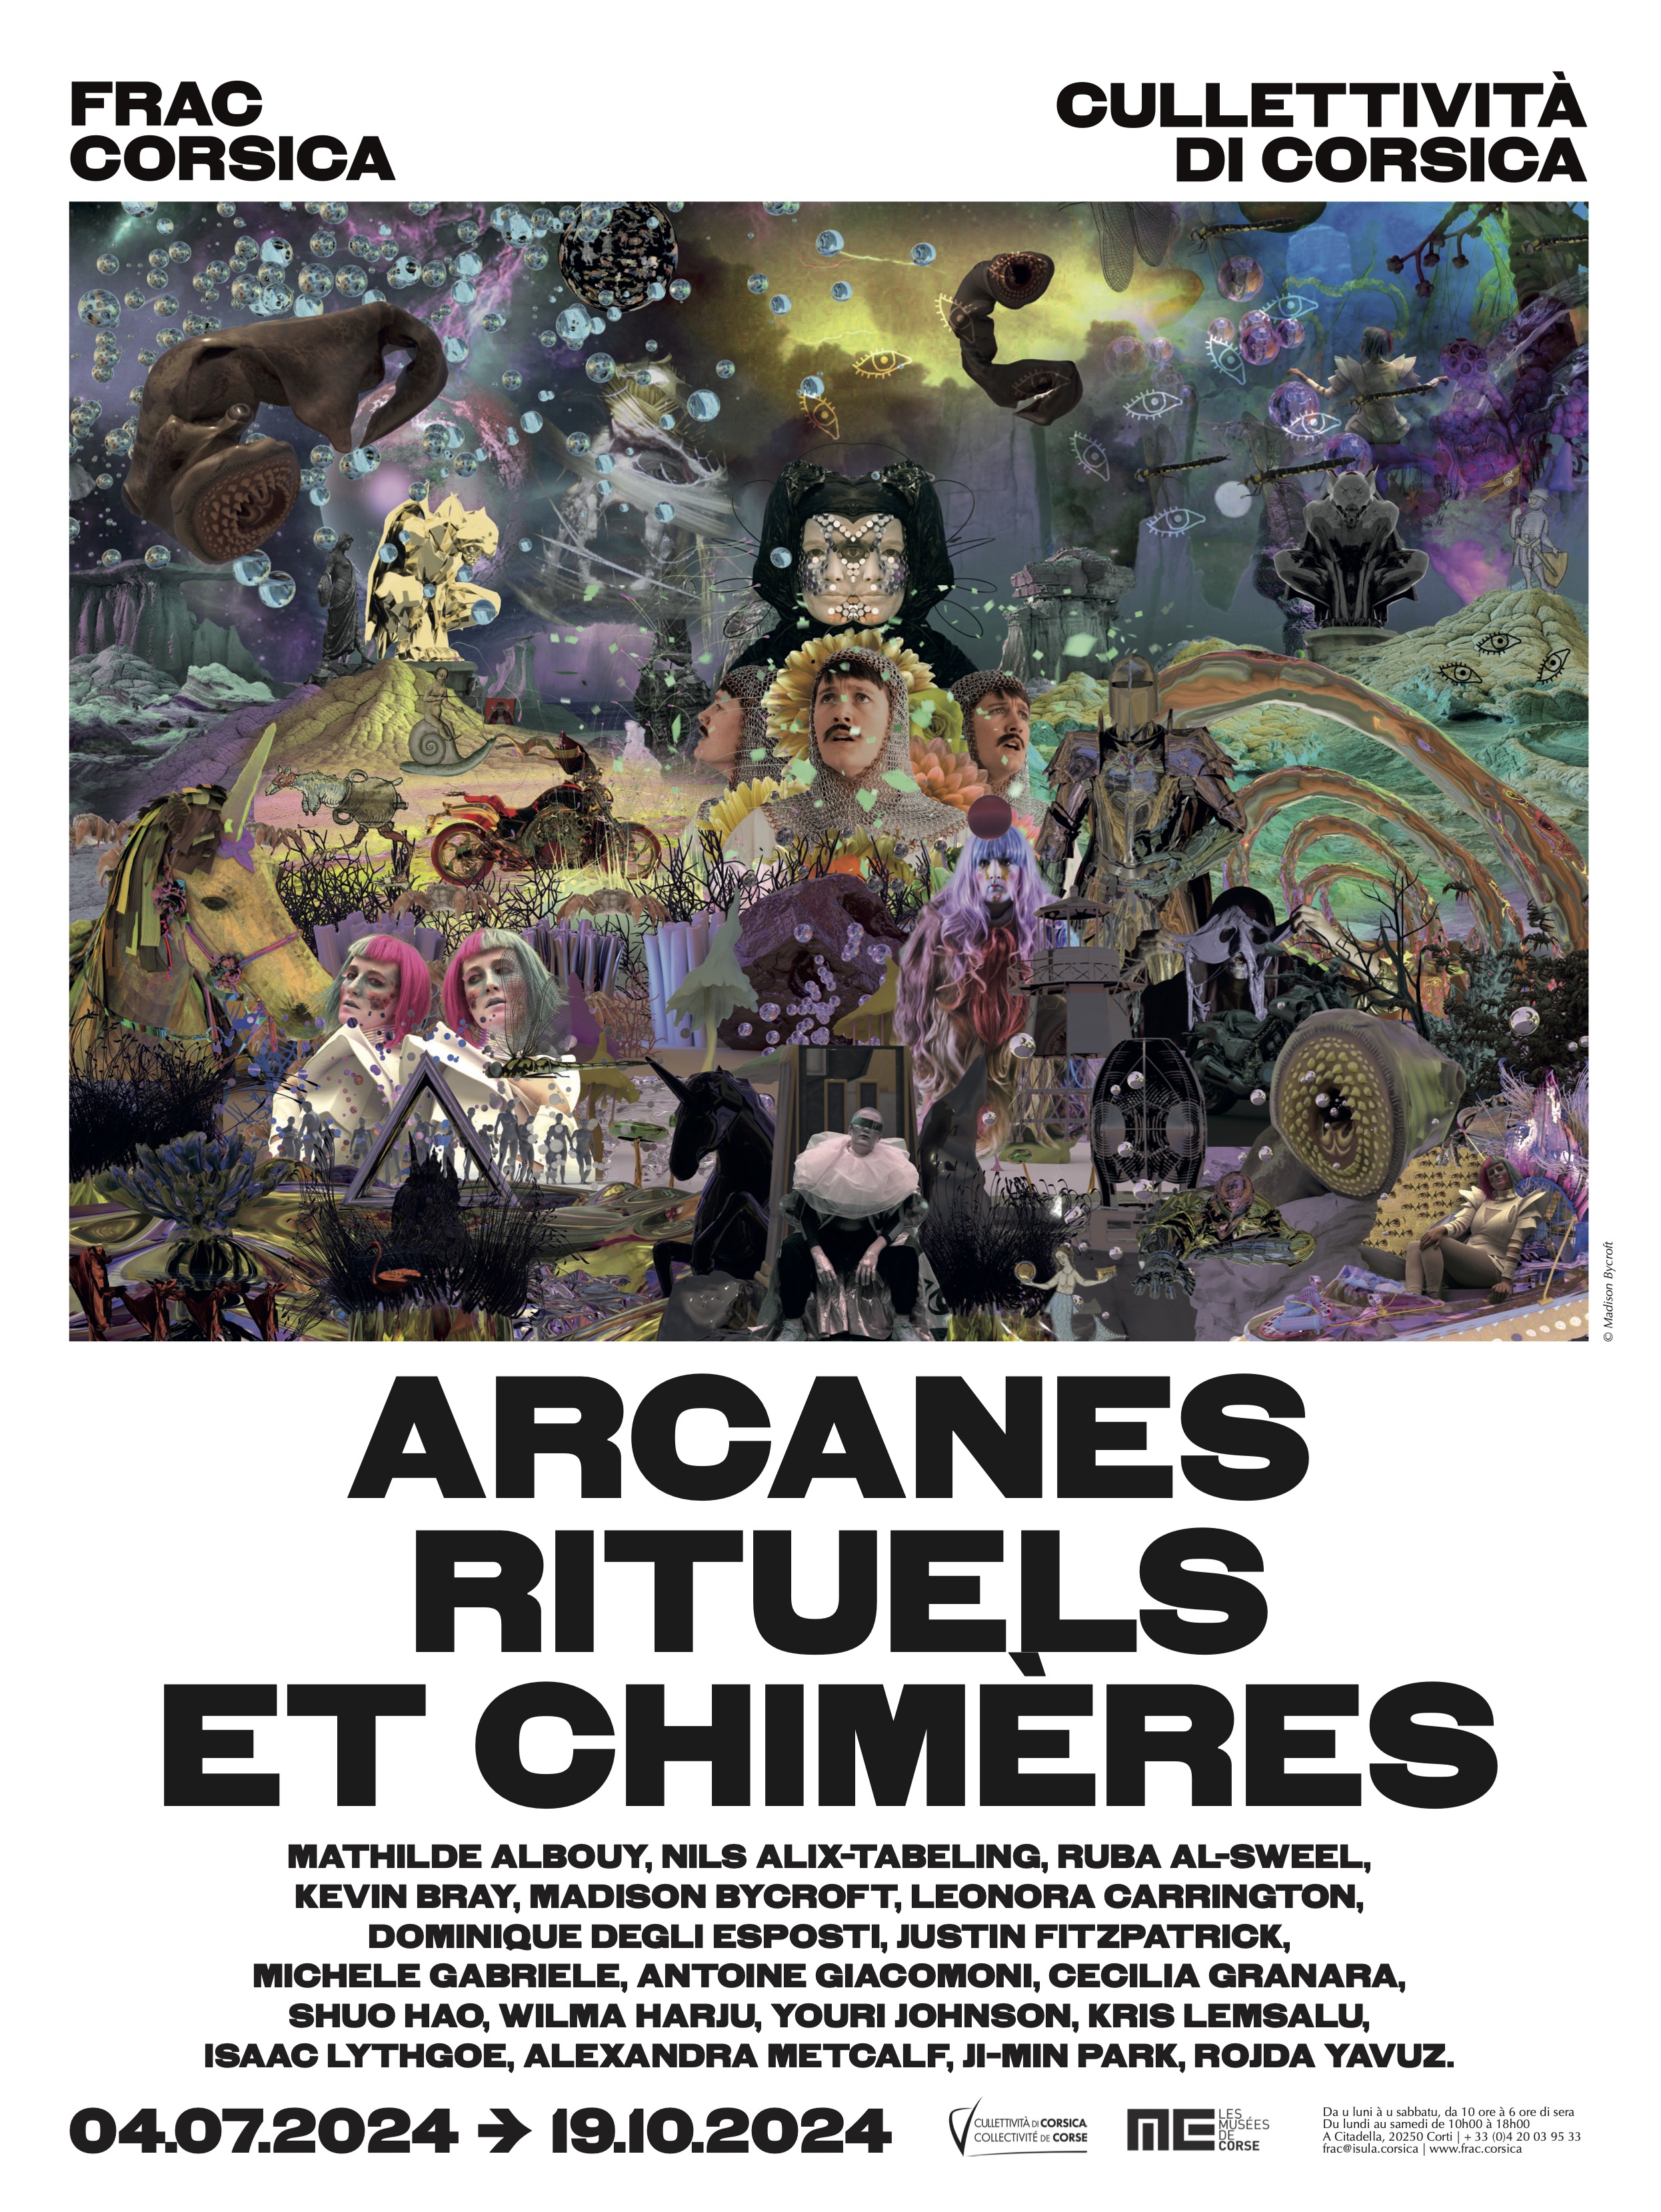 Exposition du FRAC Corsica  "Arcanes, Rituels et Chimères" - Corti